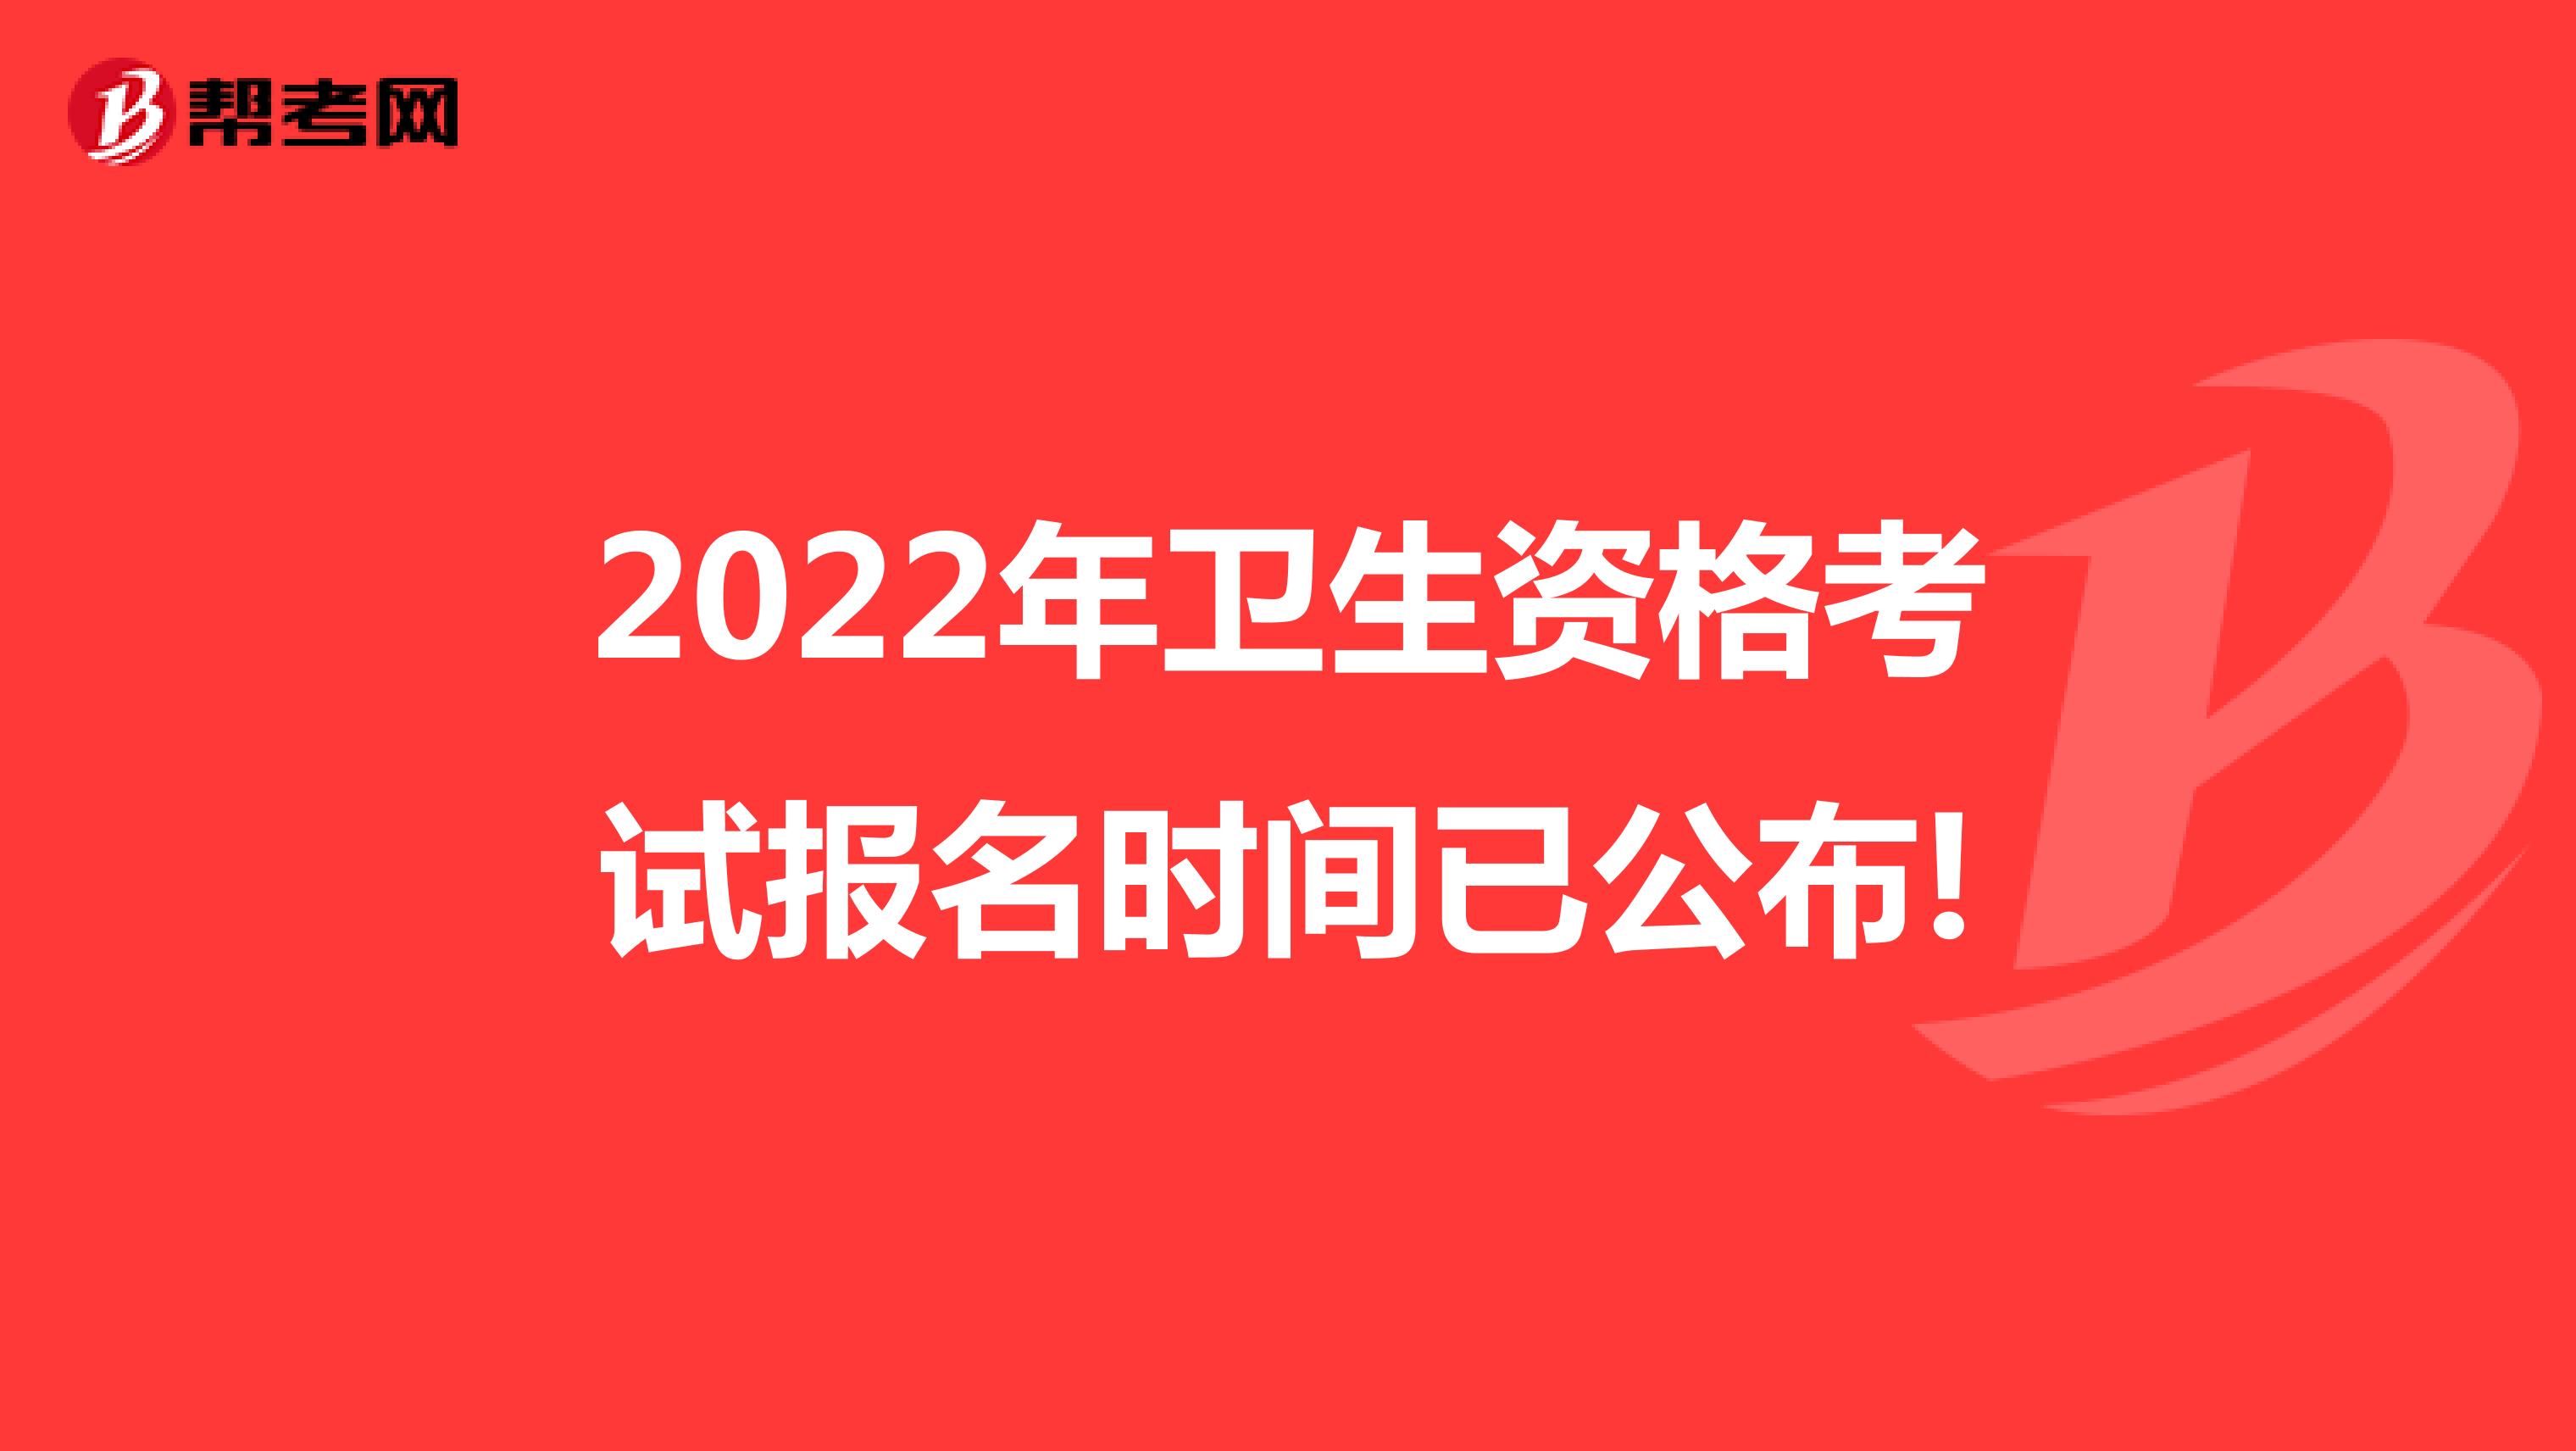 2022年卫生资格考试报名时间已公布!